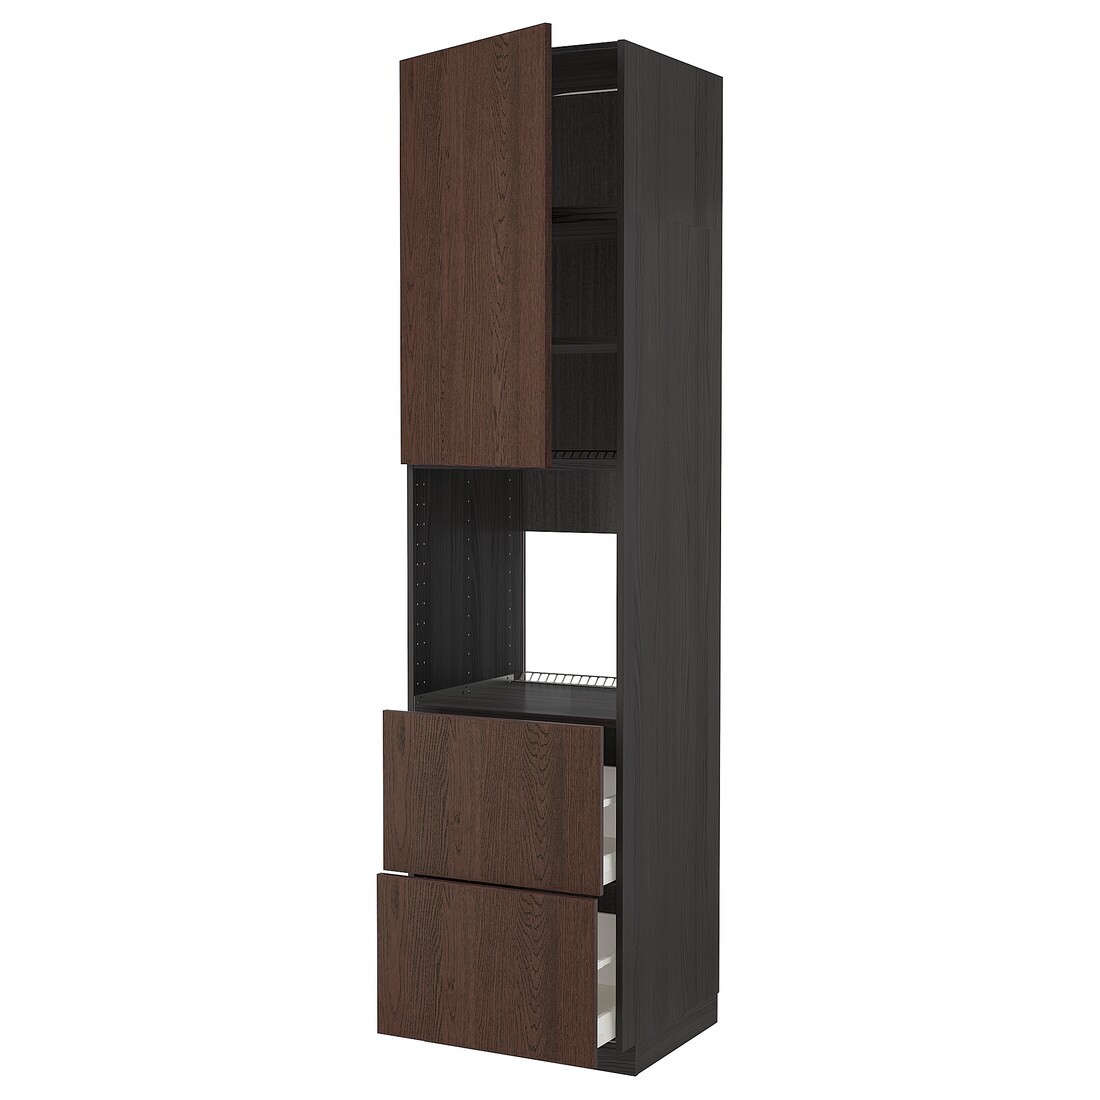 METOD МЕТОД / MAXIMERA МАКСИМЕРА Высокий шкаф для духовки, черный / Sinarp коричневый, 60x60x240 см